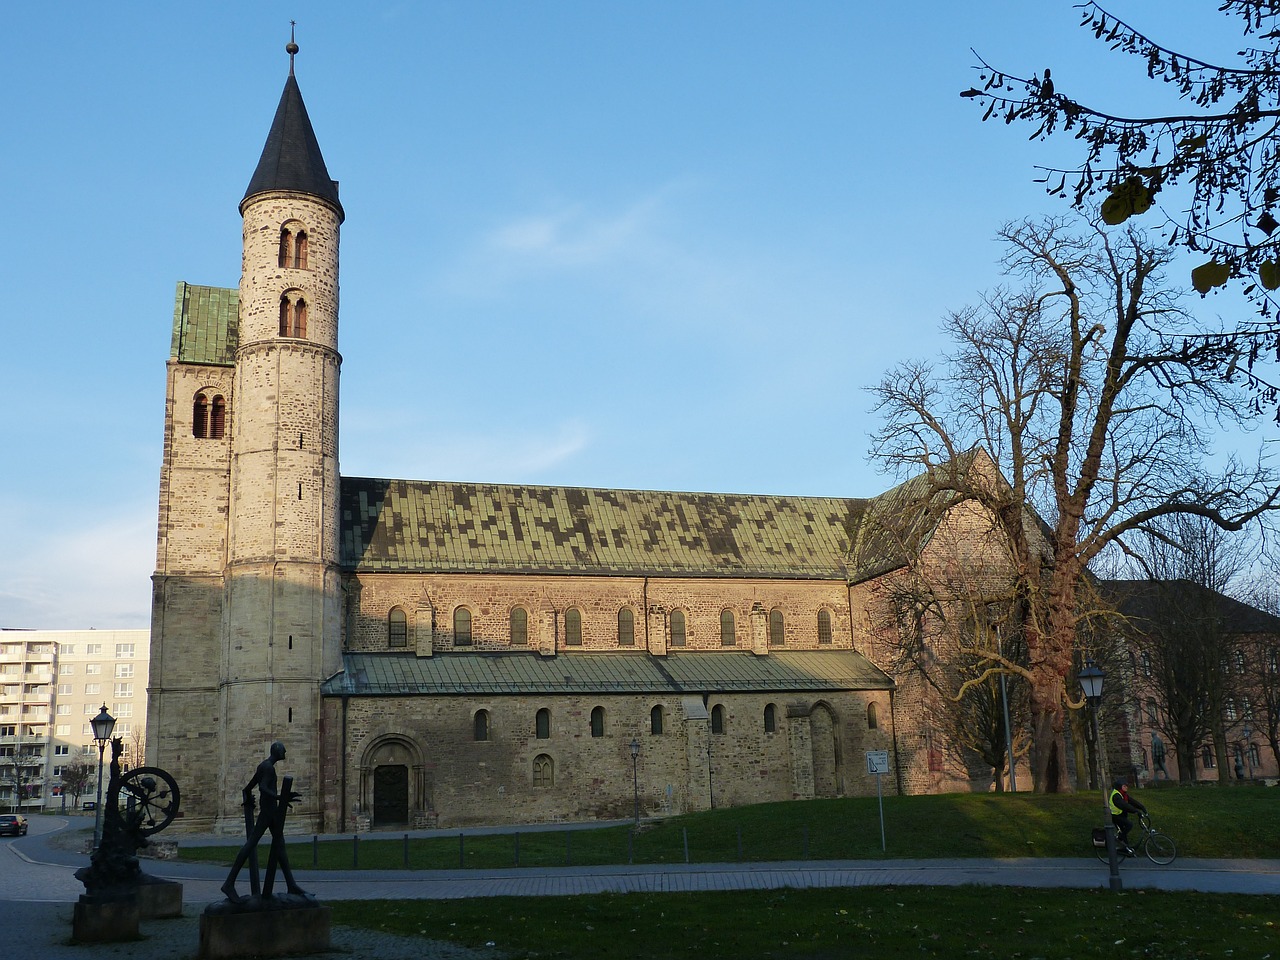 Bažnyčia, Bokštas, Magdeburgas, Saksonija-Anhaltas, Pastatas, Krikščionybė, Vienuolynas, Rhaeto Romanic, Romanesque, Istoriškai